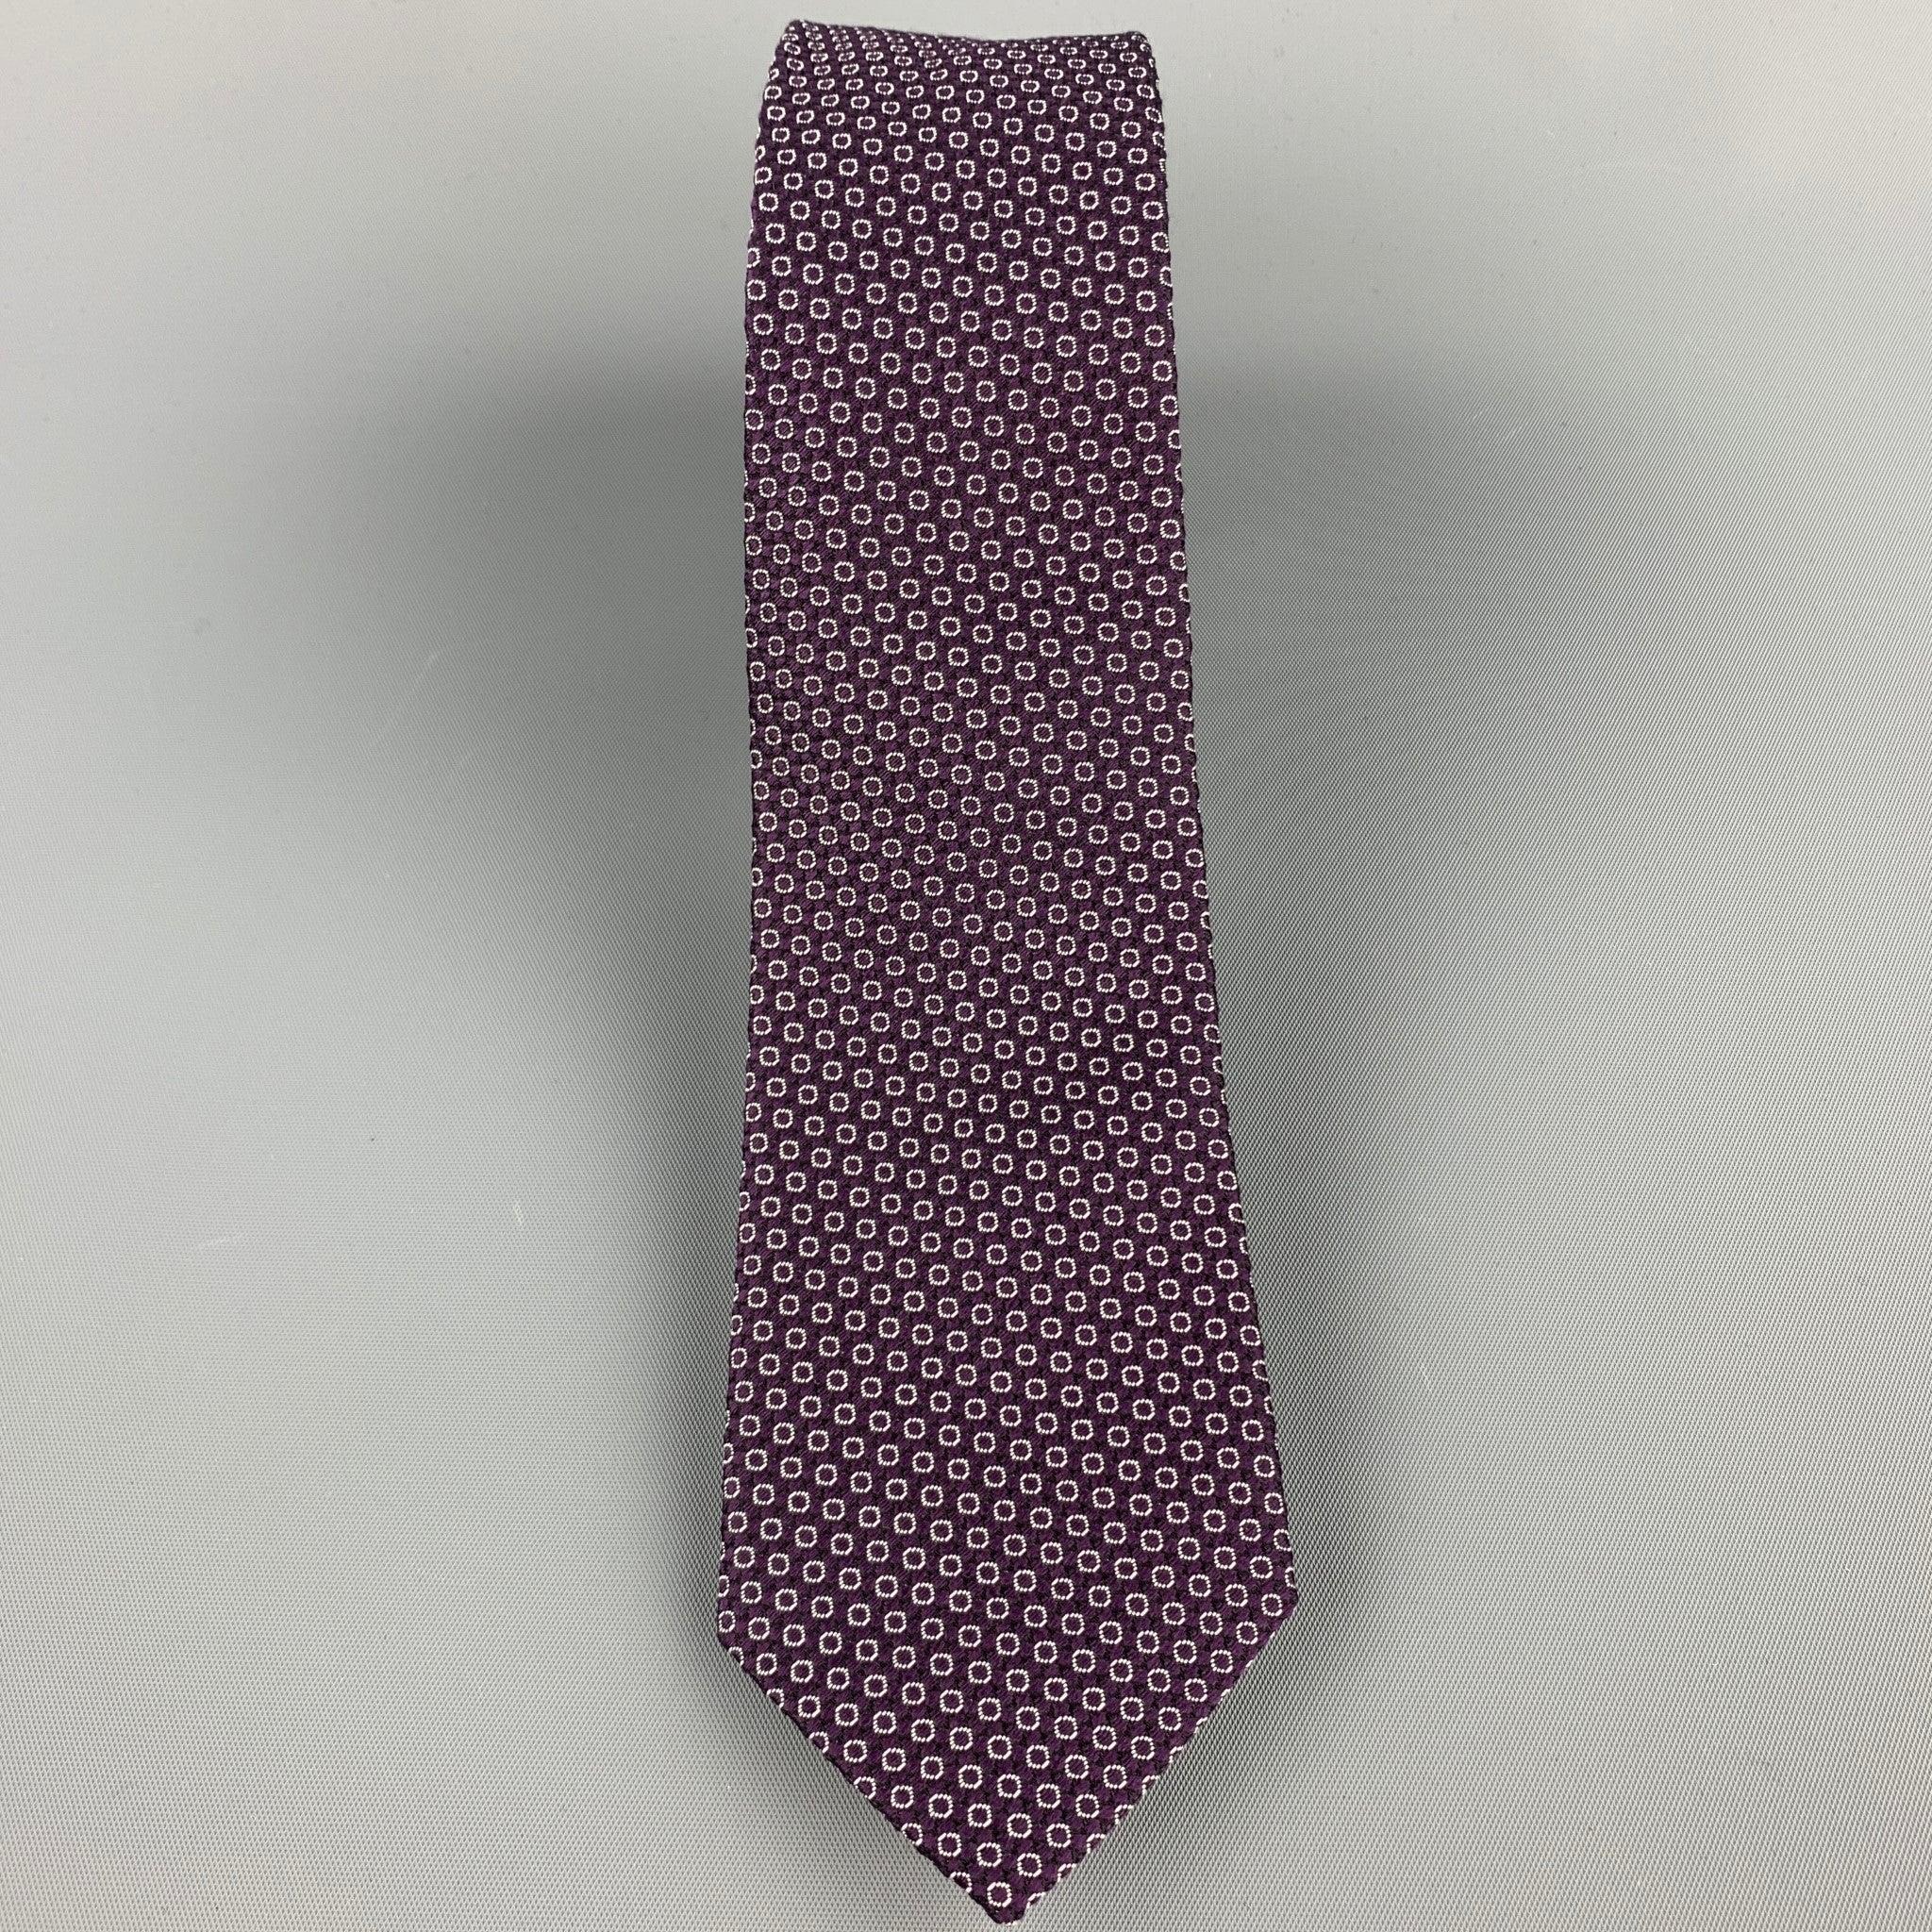 La cravate PAUL SMITH se présente sous la forme d'un imprimé à pois violet avec une doublure florale. Fabriqué en Italie.Très bon état avant l'ouverture.Largeur : 2.5 pouces 
  
  
 
Référence : 106708
Catégorie : Cravate
Plus de détails
    
Marque